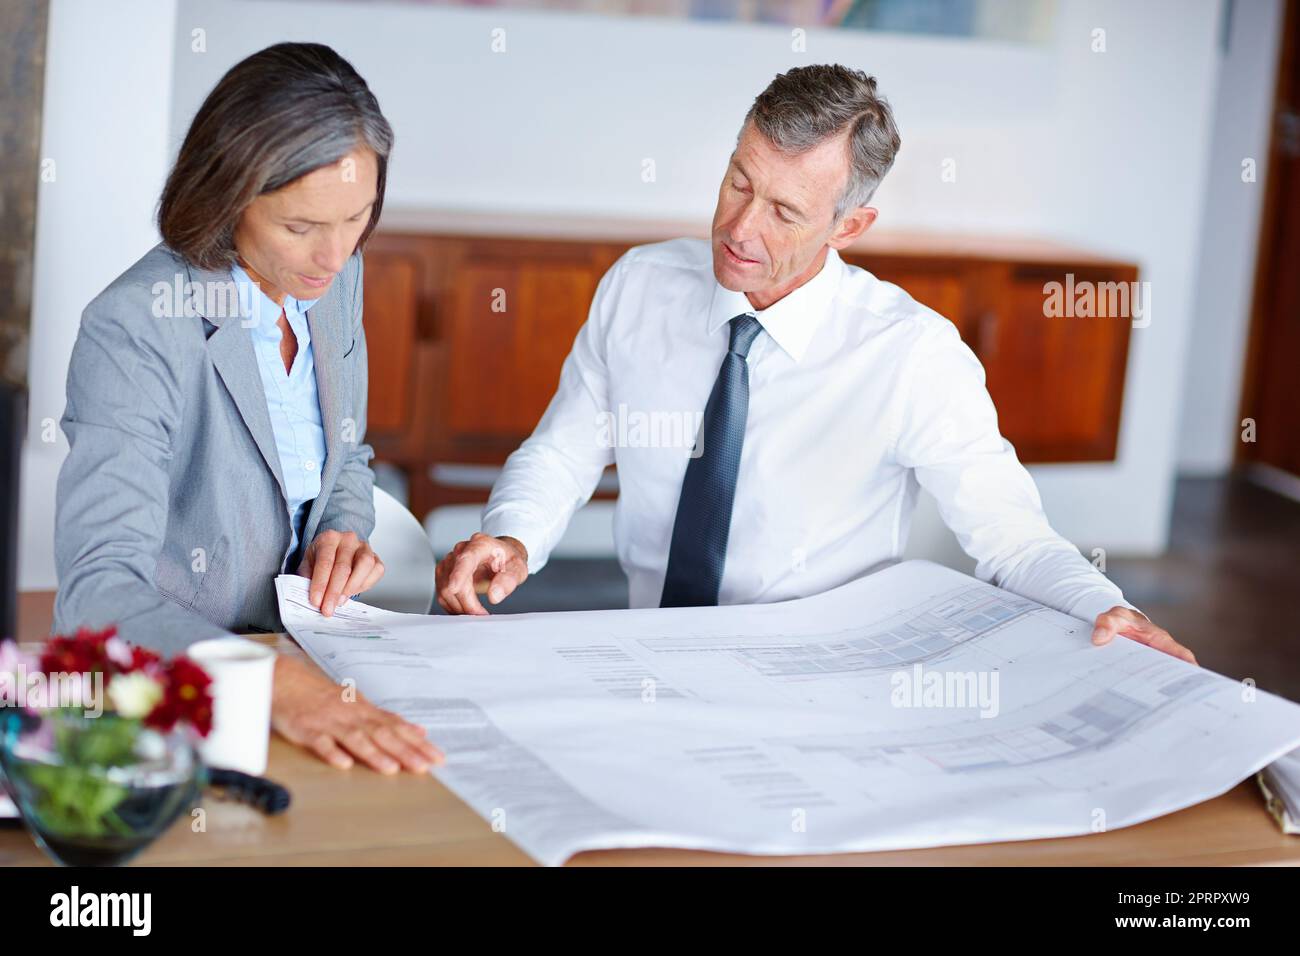 Valutare i piani. Due architetti maturi che discutono i progetti in un ufficio. Foto Stock